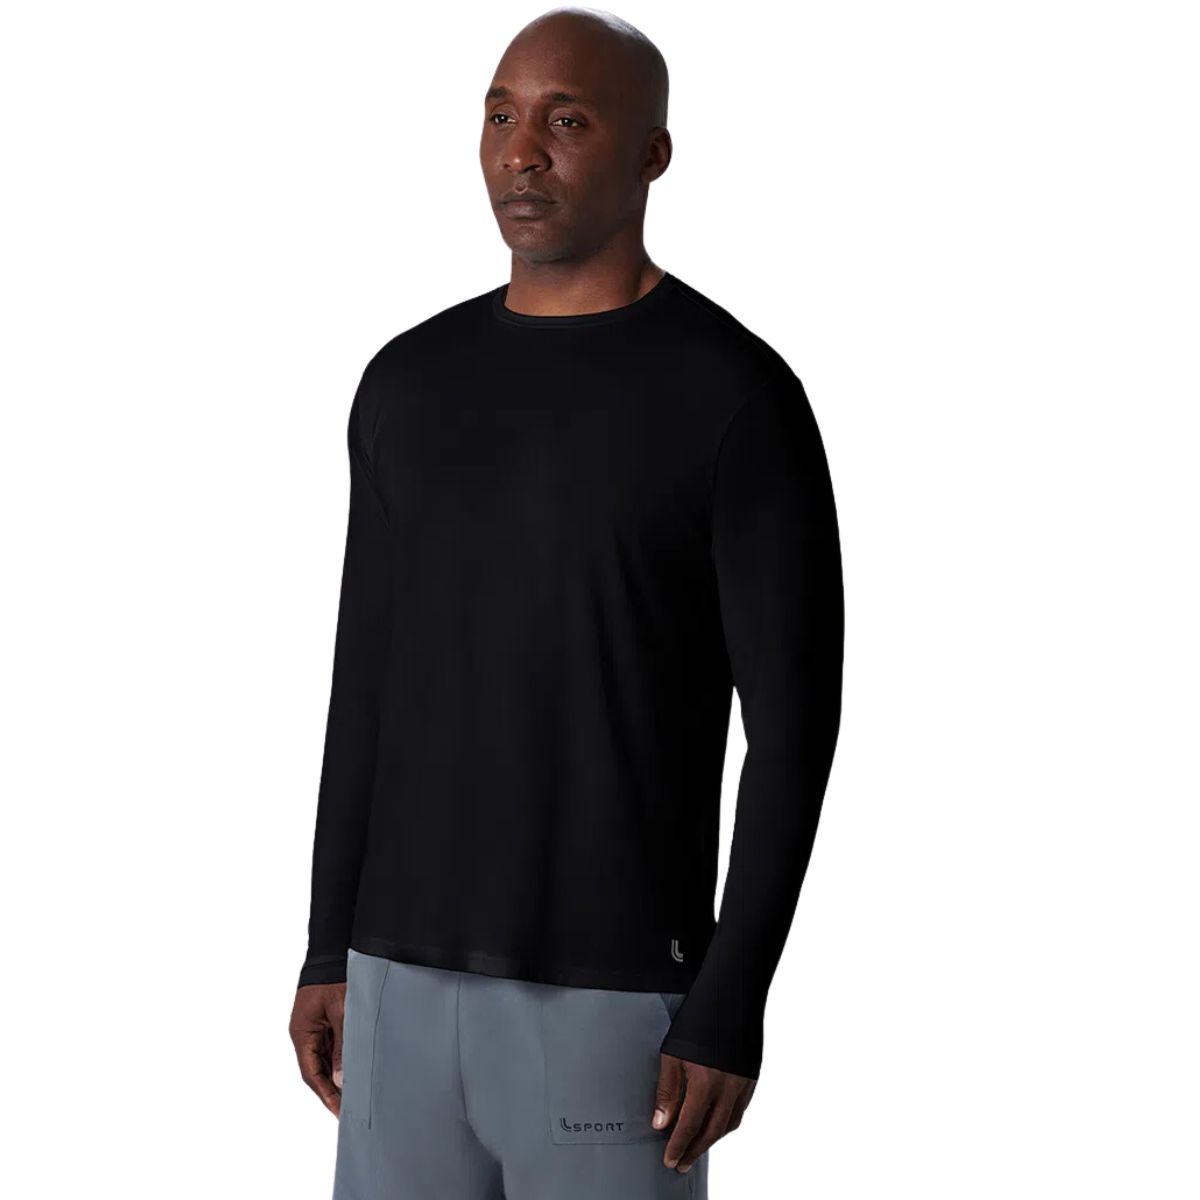 Camiseta masculina manga longa com proteção UV e repelente Lupo